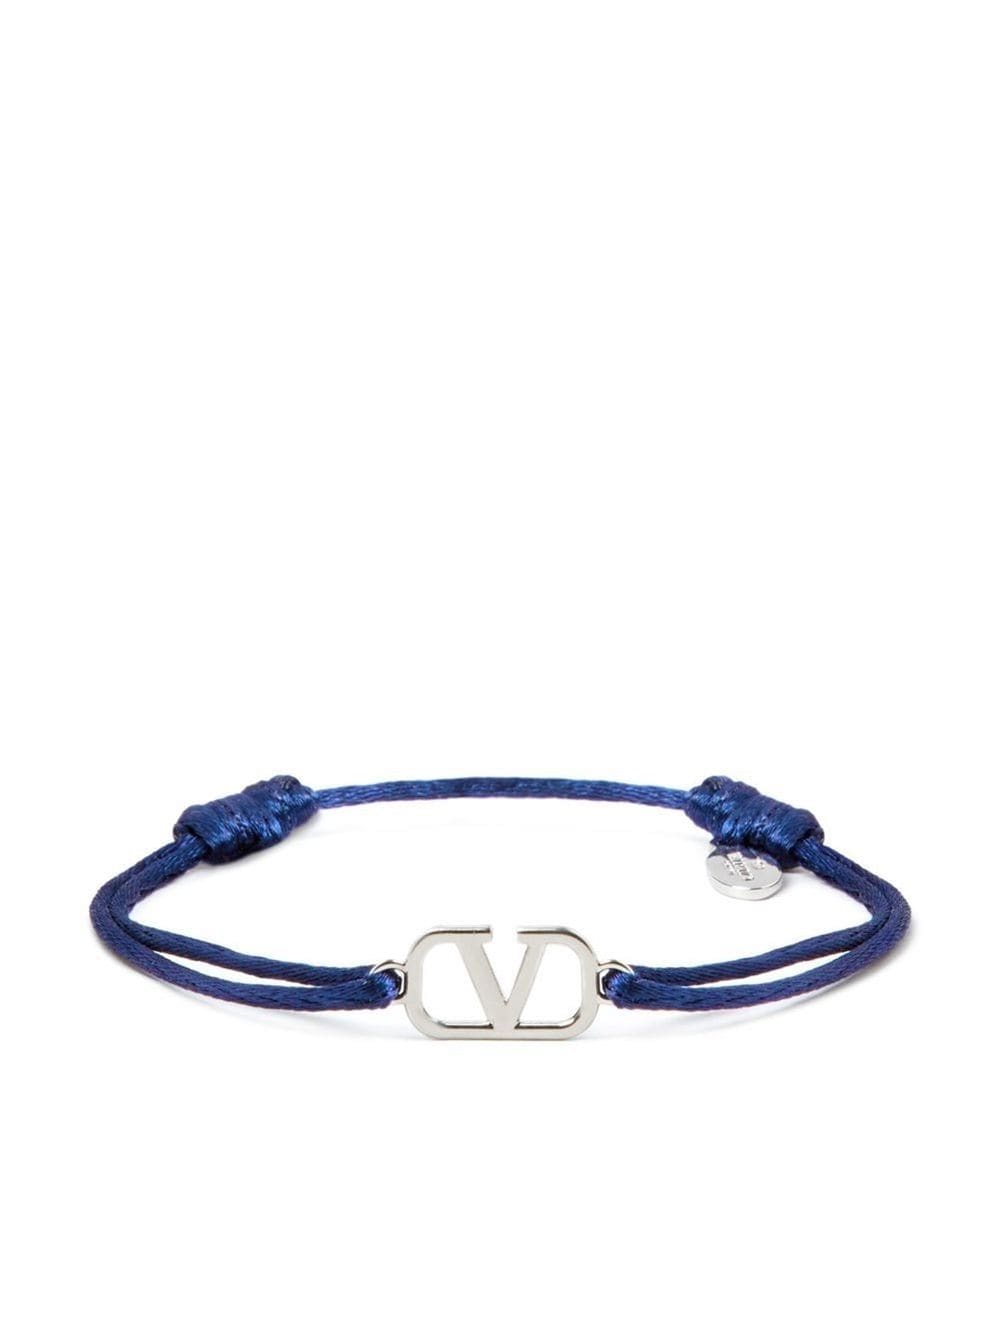 anker Slapper af Venlighed VLogo Signature cord bracelet | Valentino Garavani | Eraldo.com